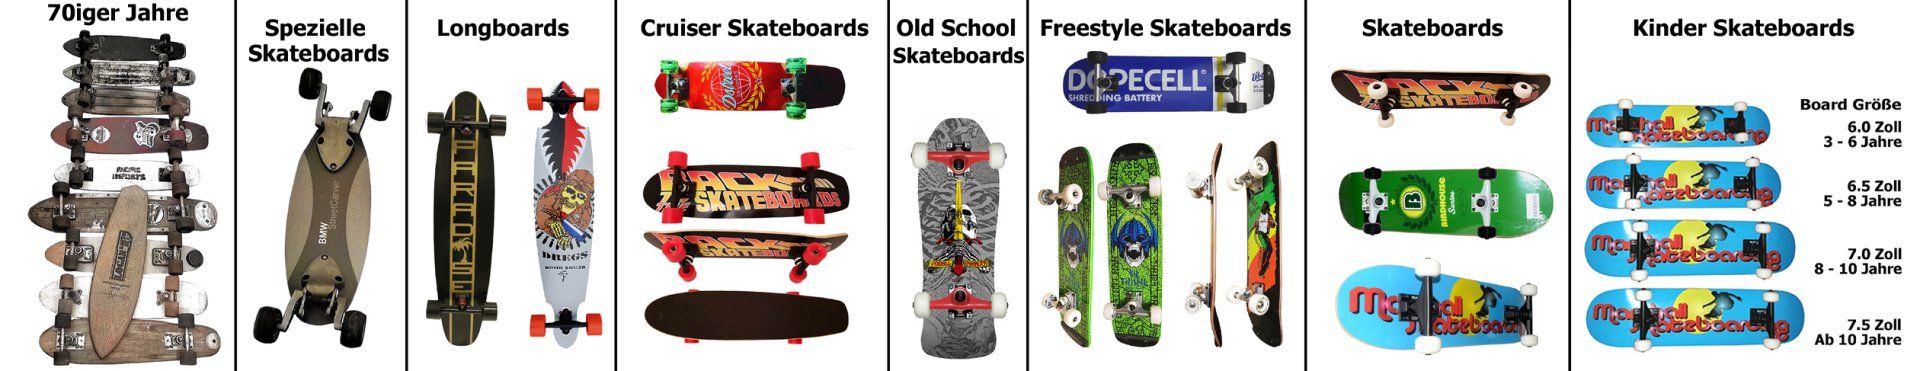 Marshall Skateboards: Spezielle Skateboards, Longboards, Cruiser-Boards, Old School Skateboards, Freestyle-Skateboards, Kinder-Skateboards